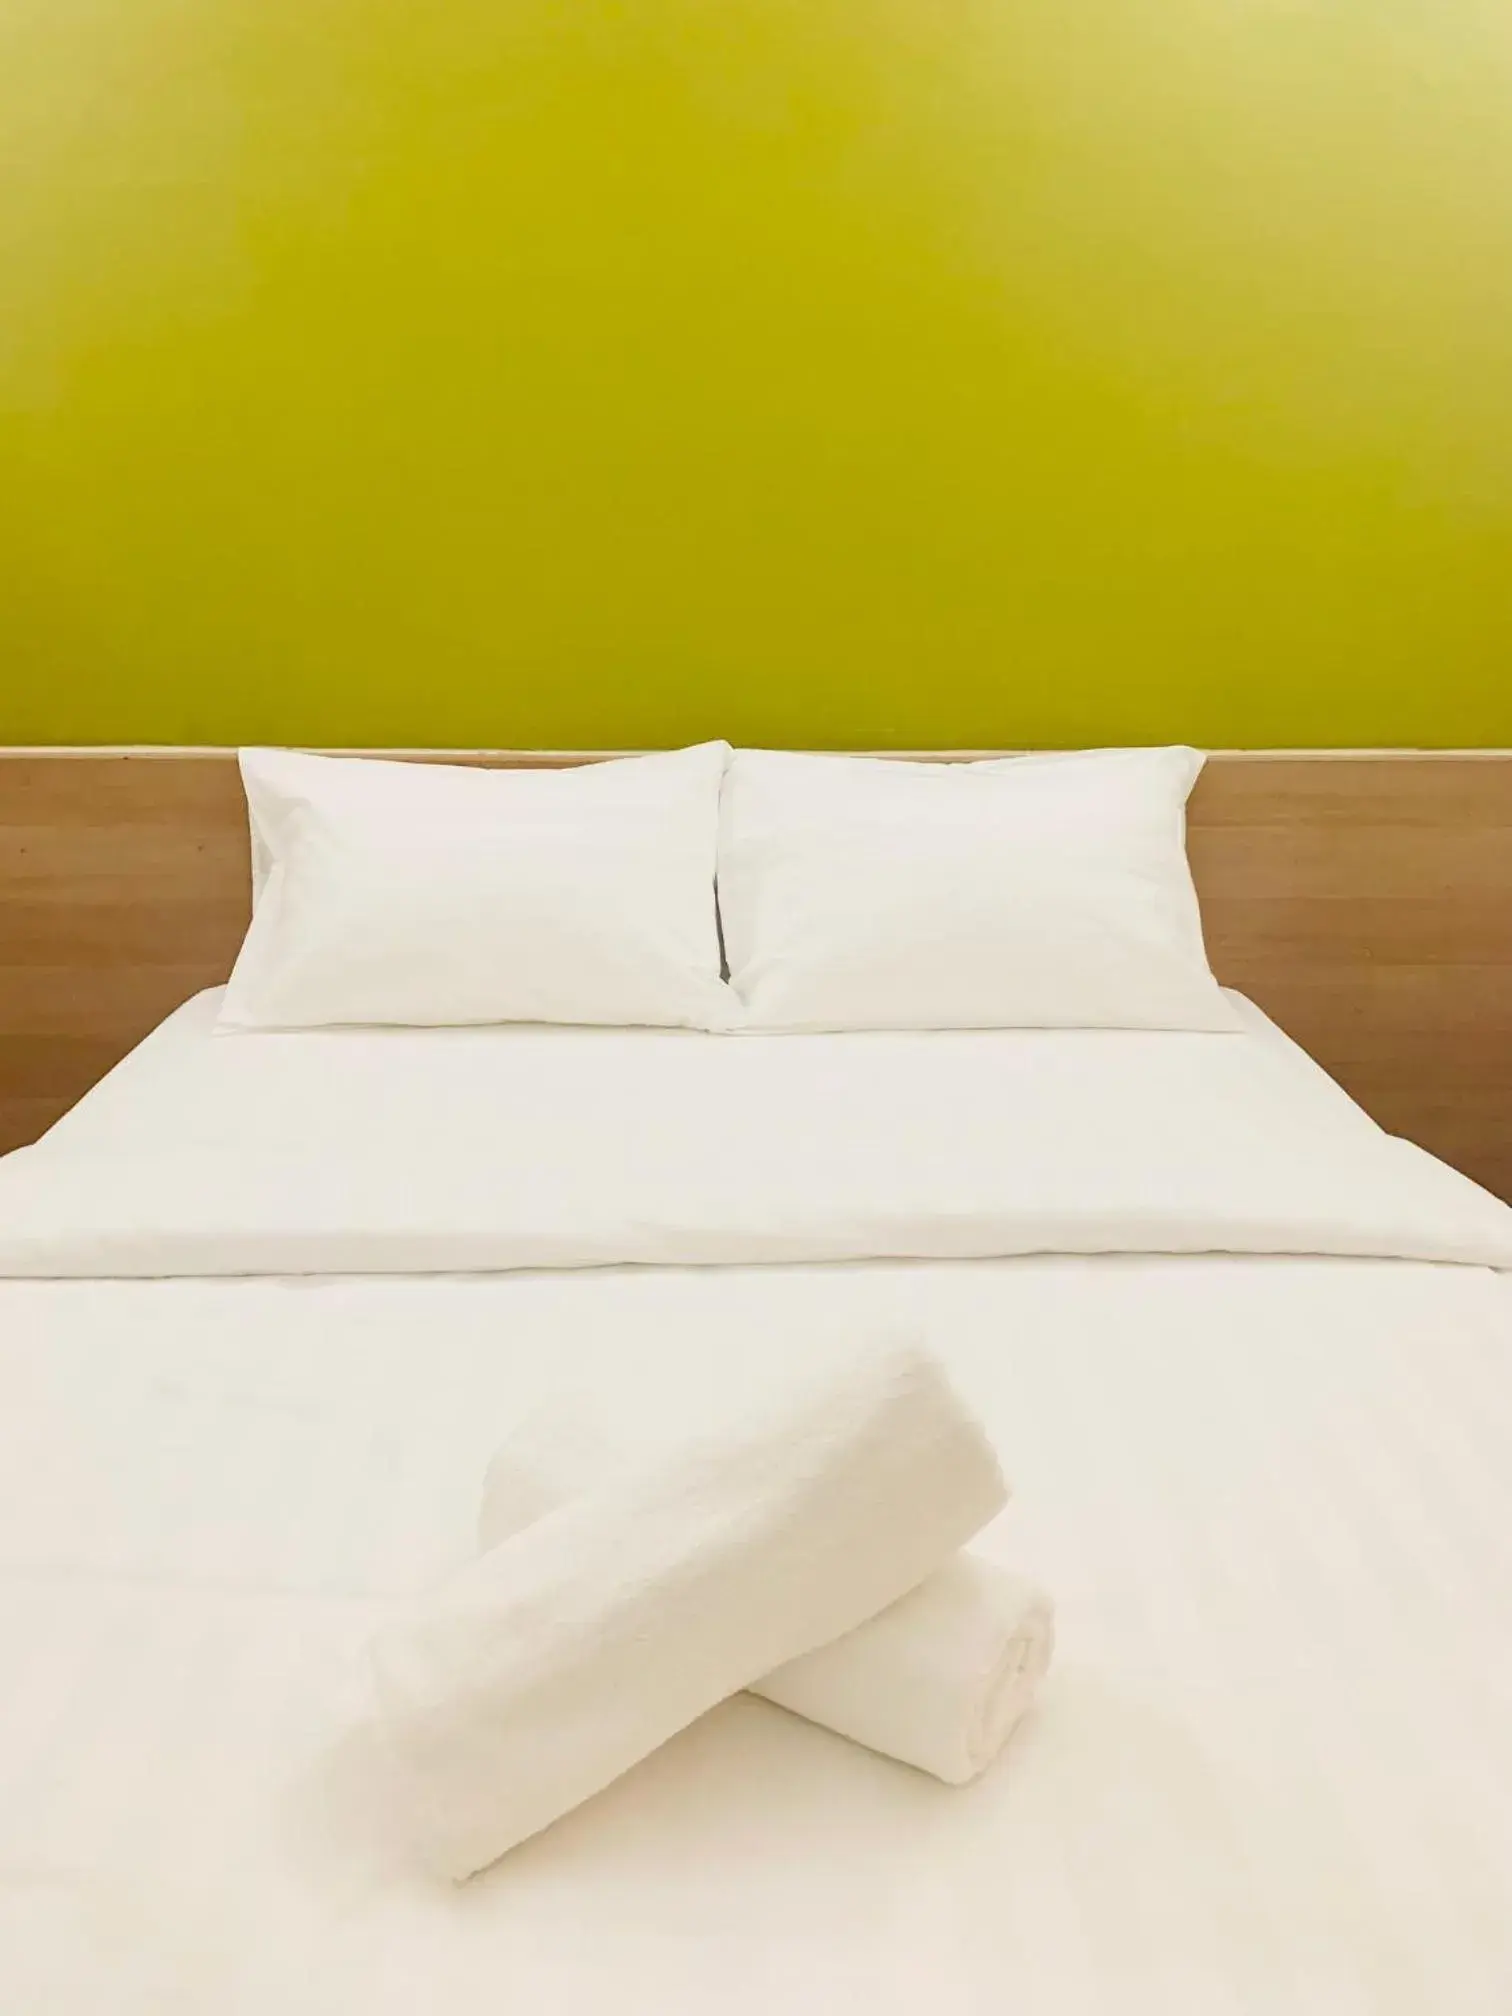 Bed in Bintang Garden Hotel